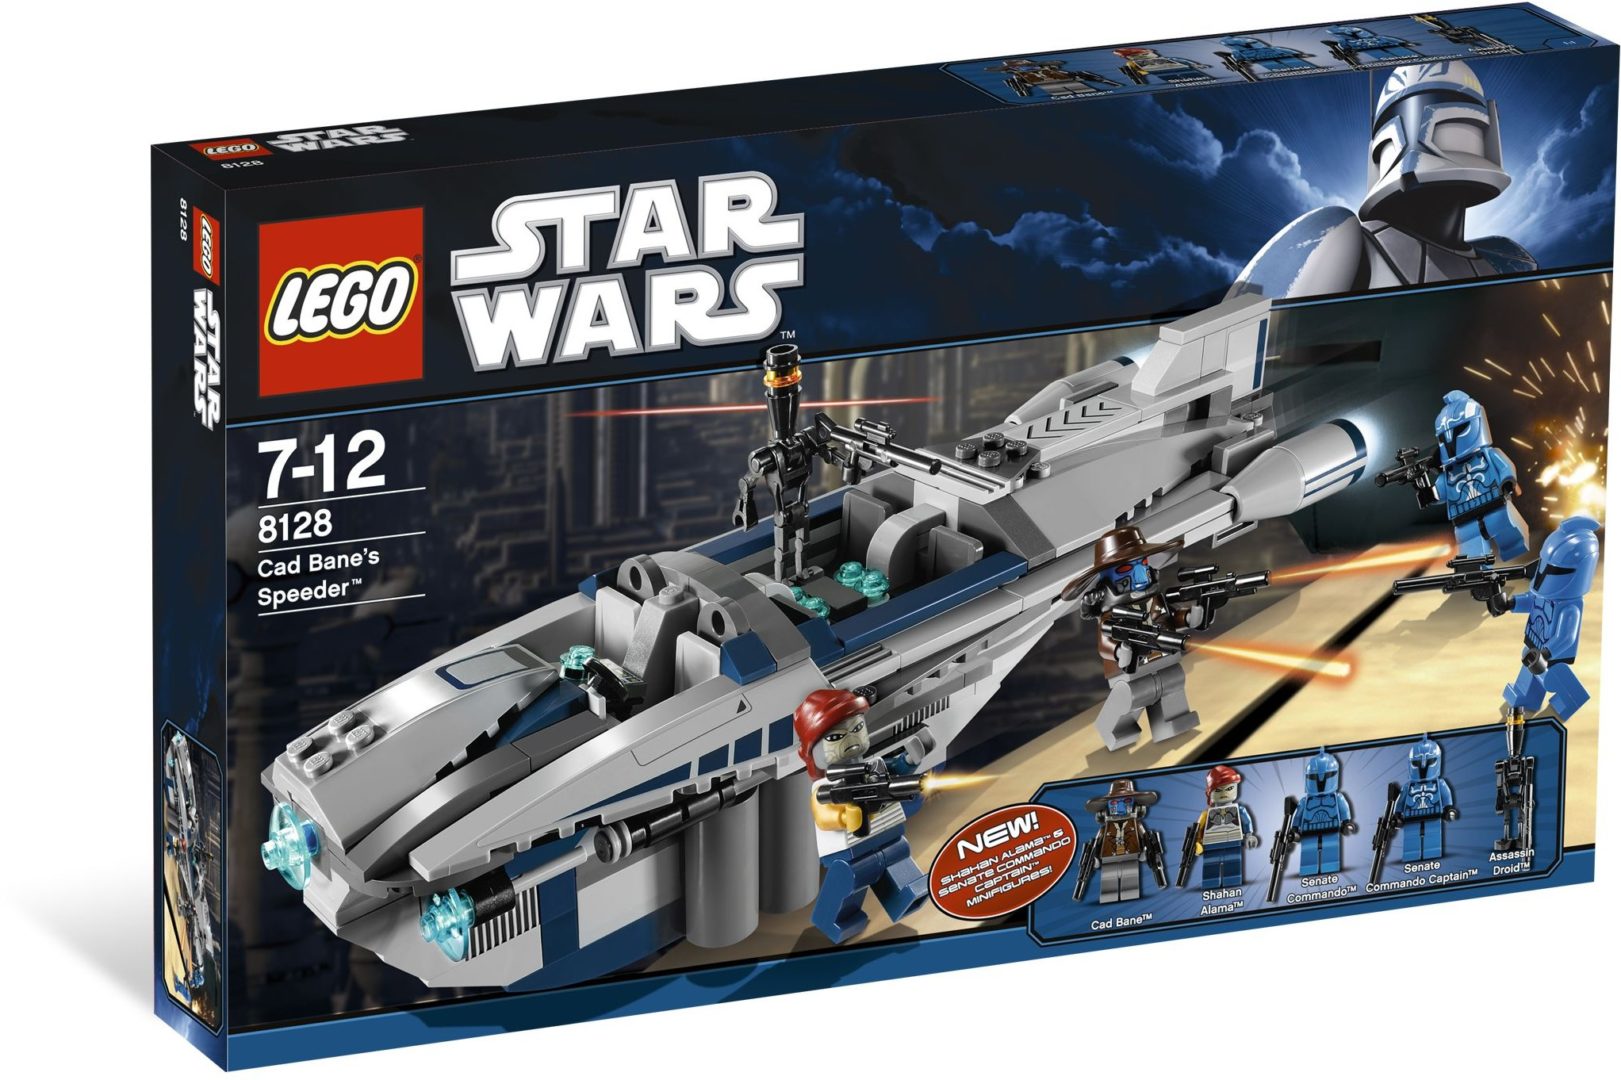 Lego Star Wars 8128 Cad Bane's Speeder